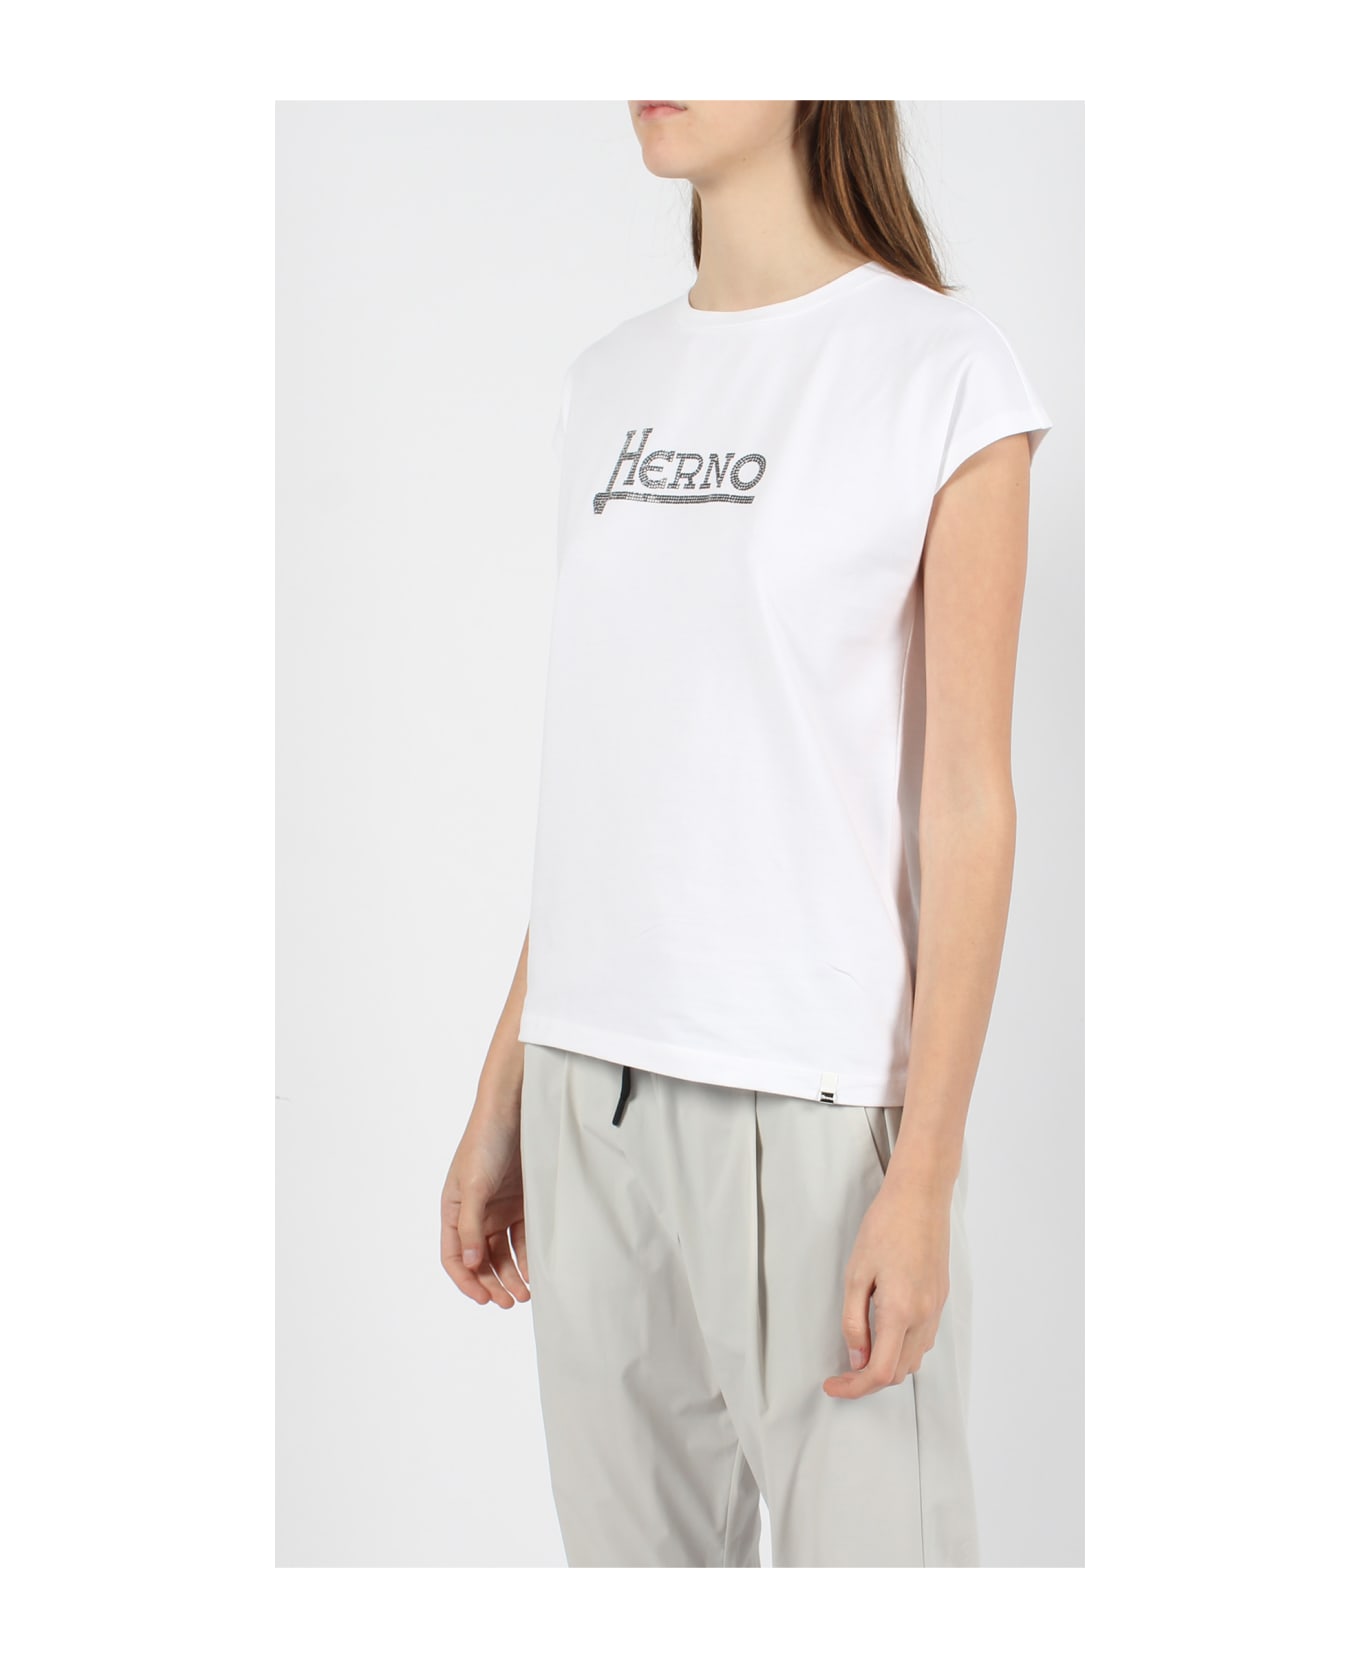 Herno Interlock Jersey T-shirt - White